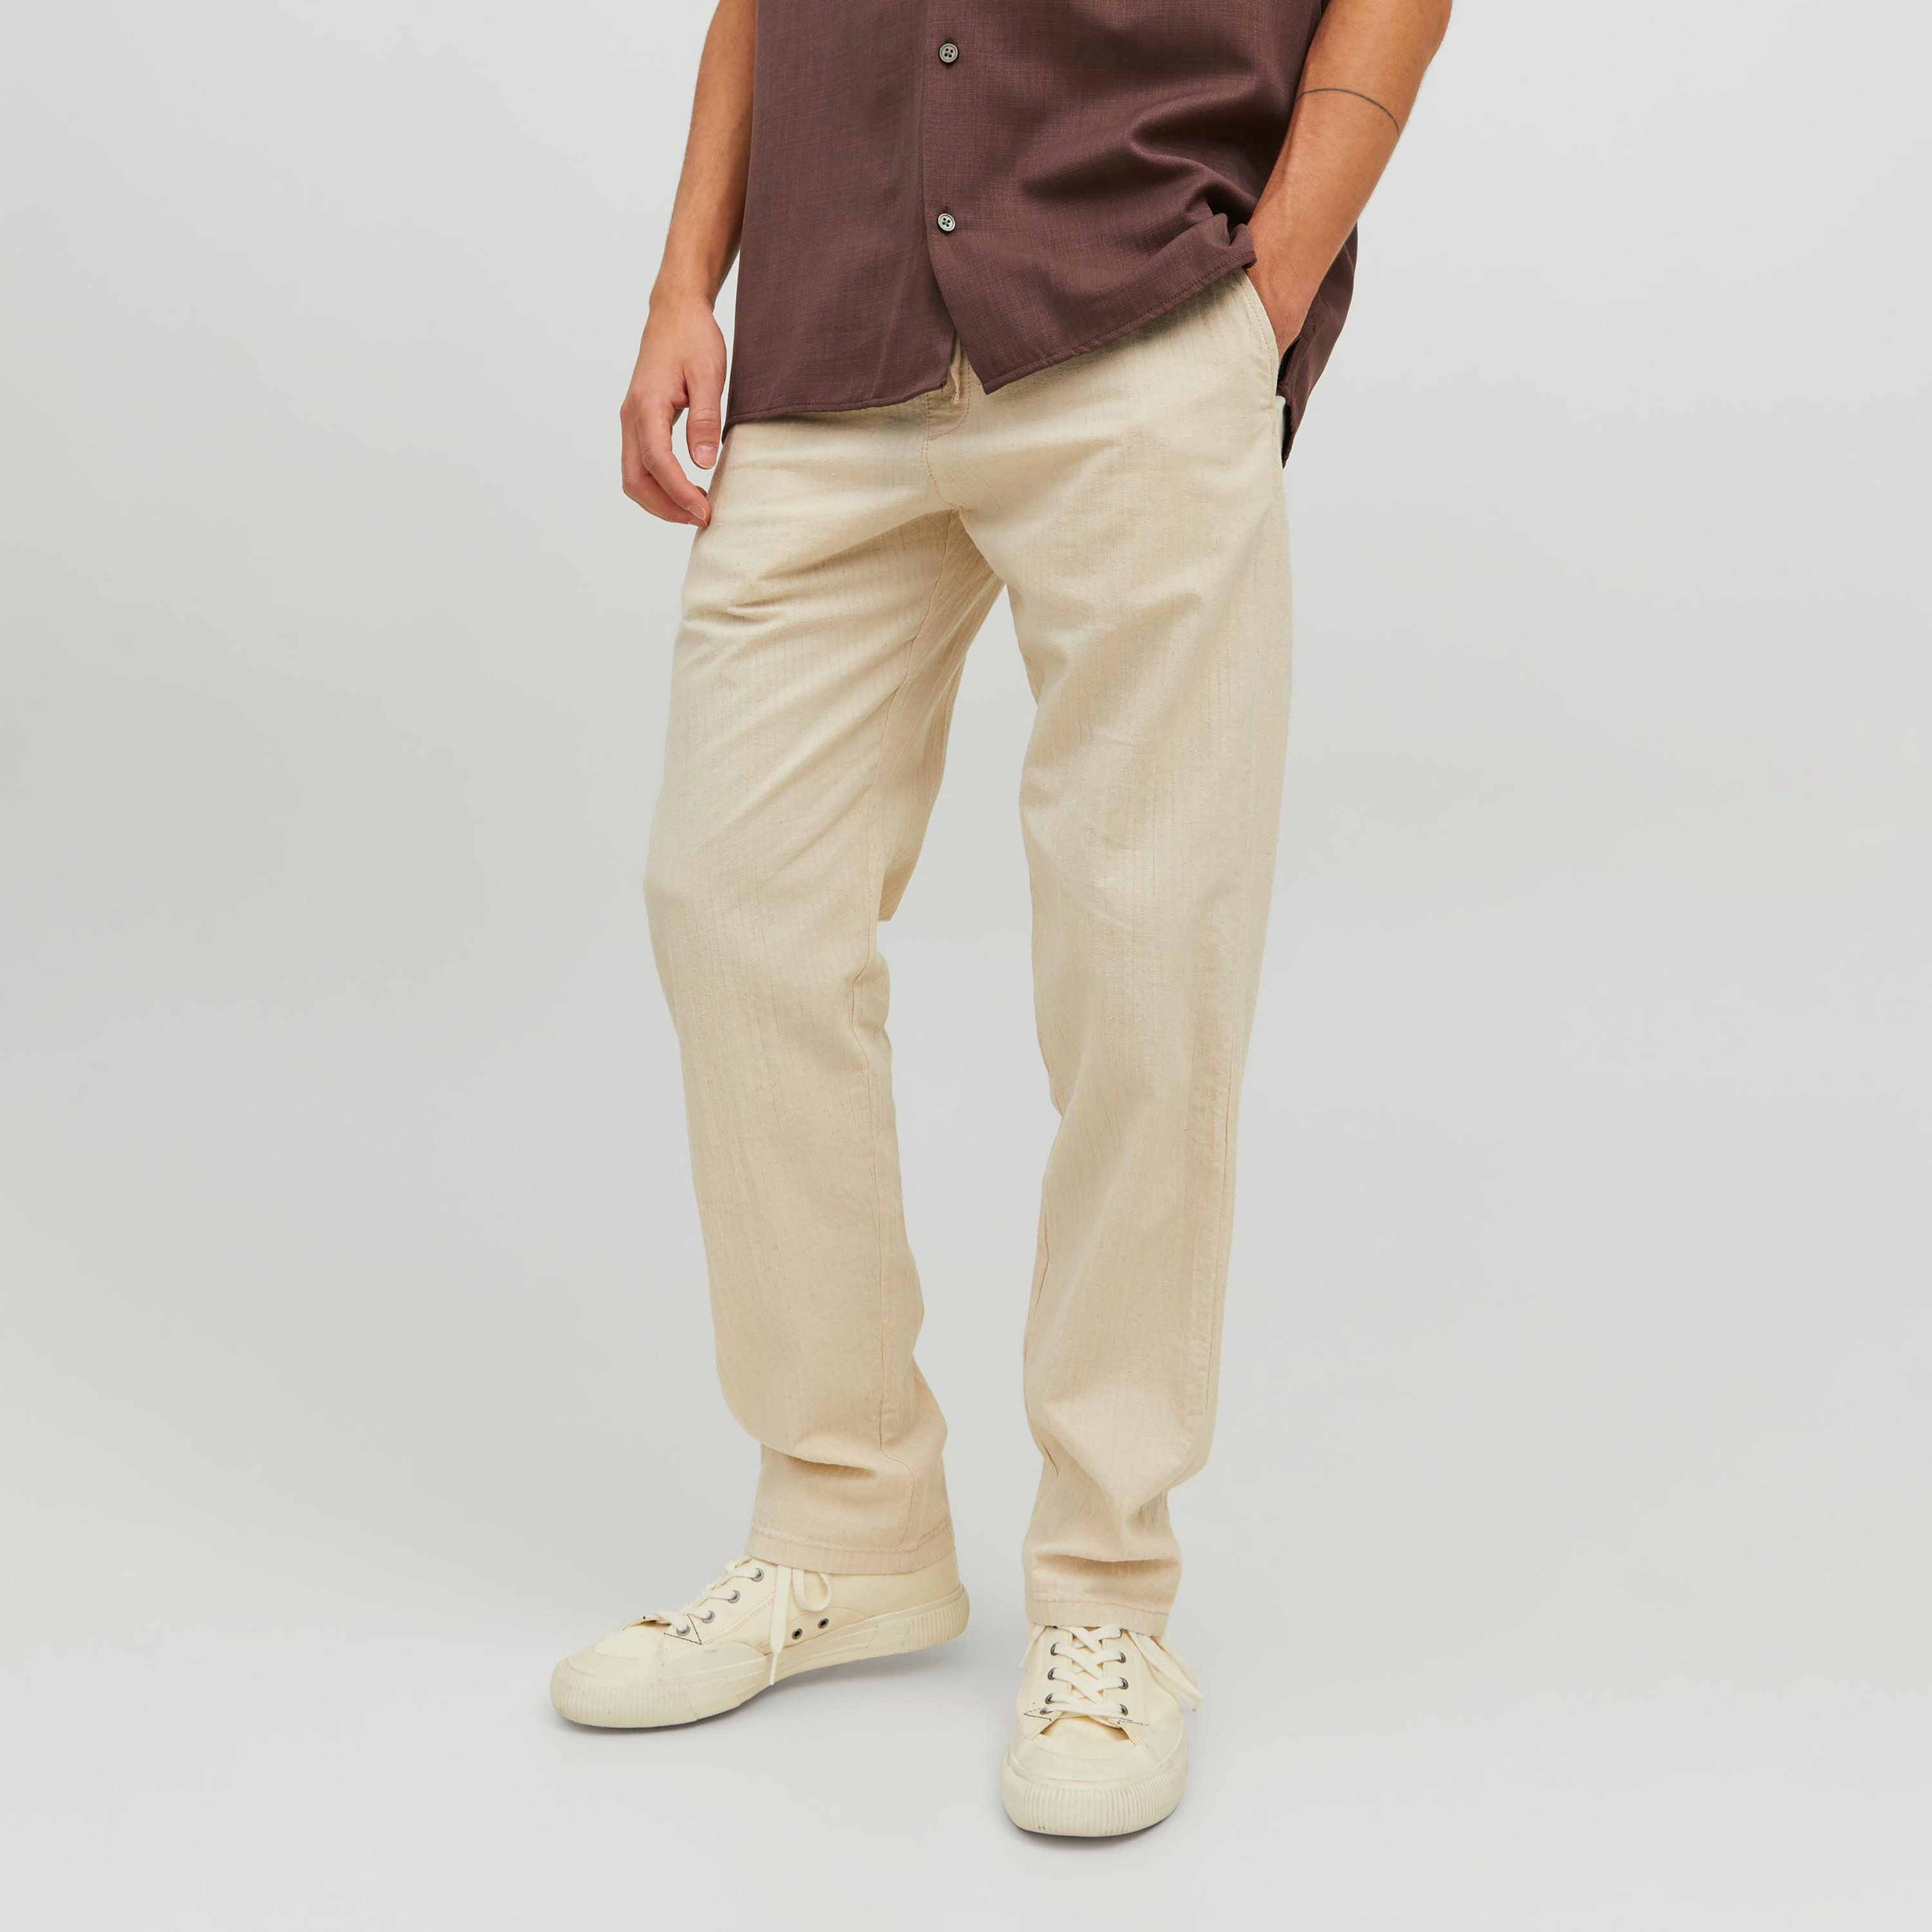 QFA Regular Fit Men Grey Trousers - Buy QFA Regular Fit Men Grey Trousers  Online at Best Prices in India | Flipkart.com